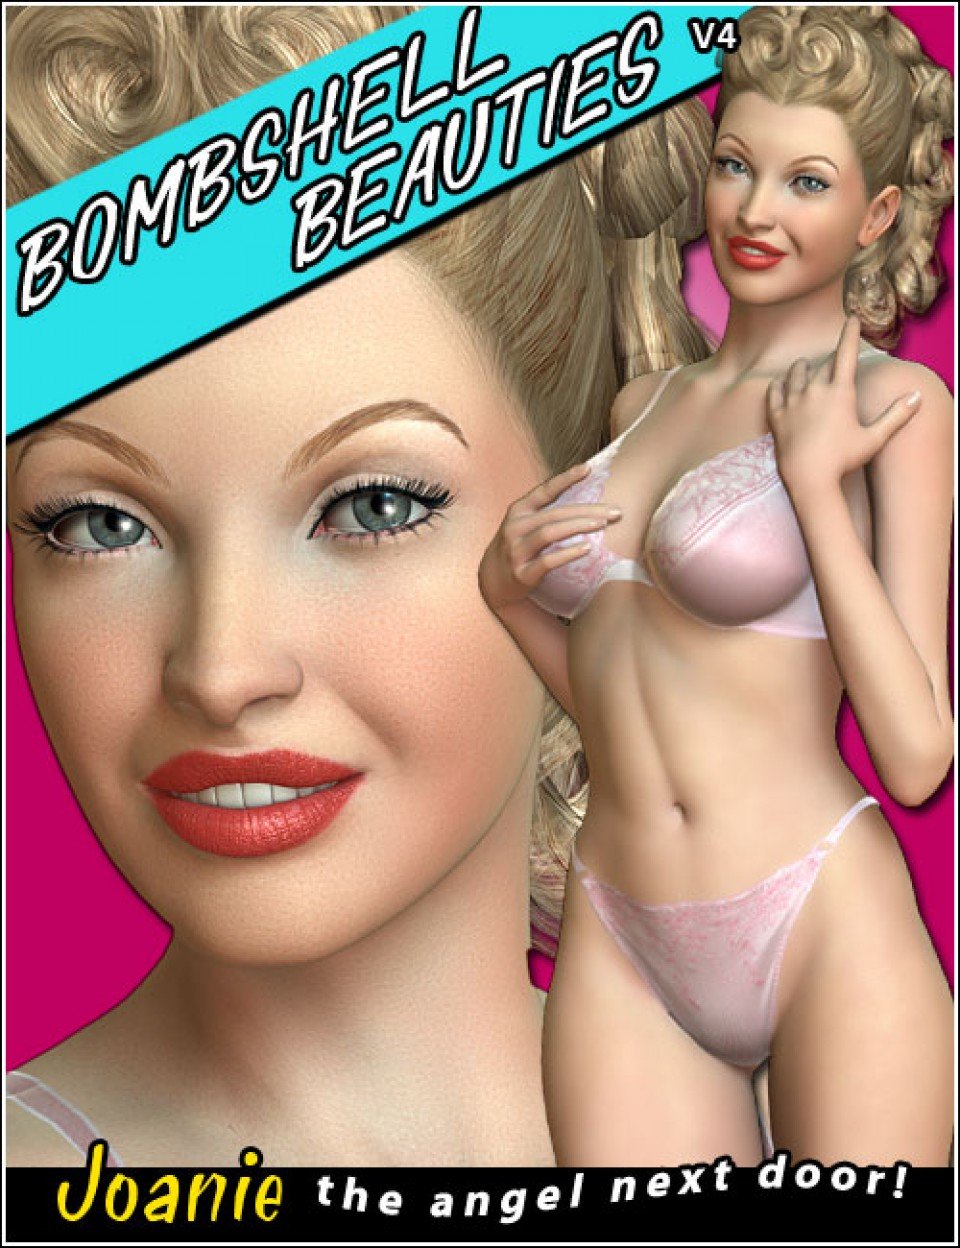 Bombshell Beauties V4 Joanie_DAZ3D下载站